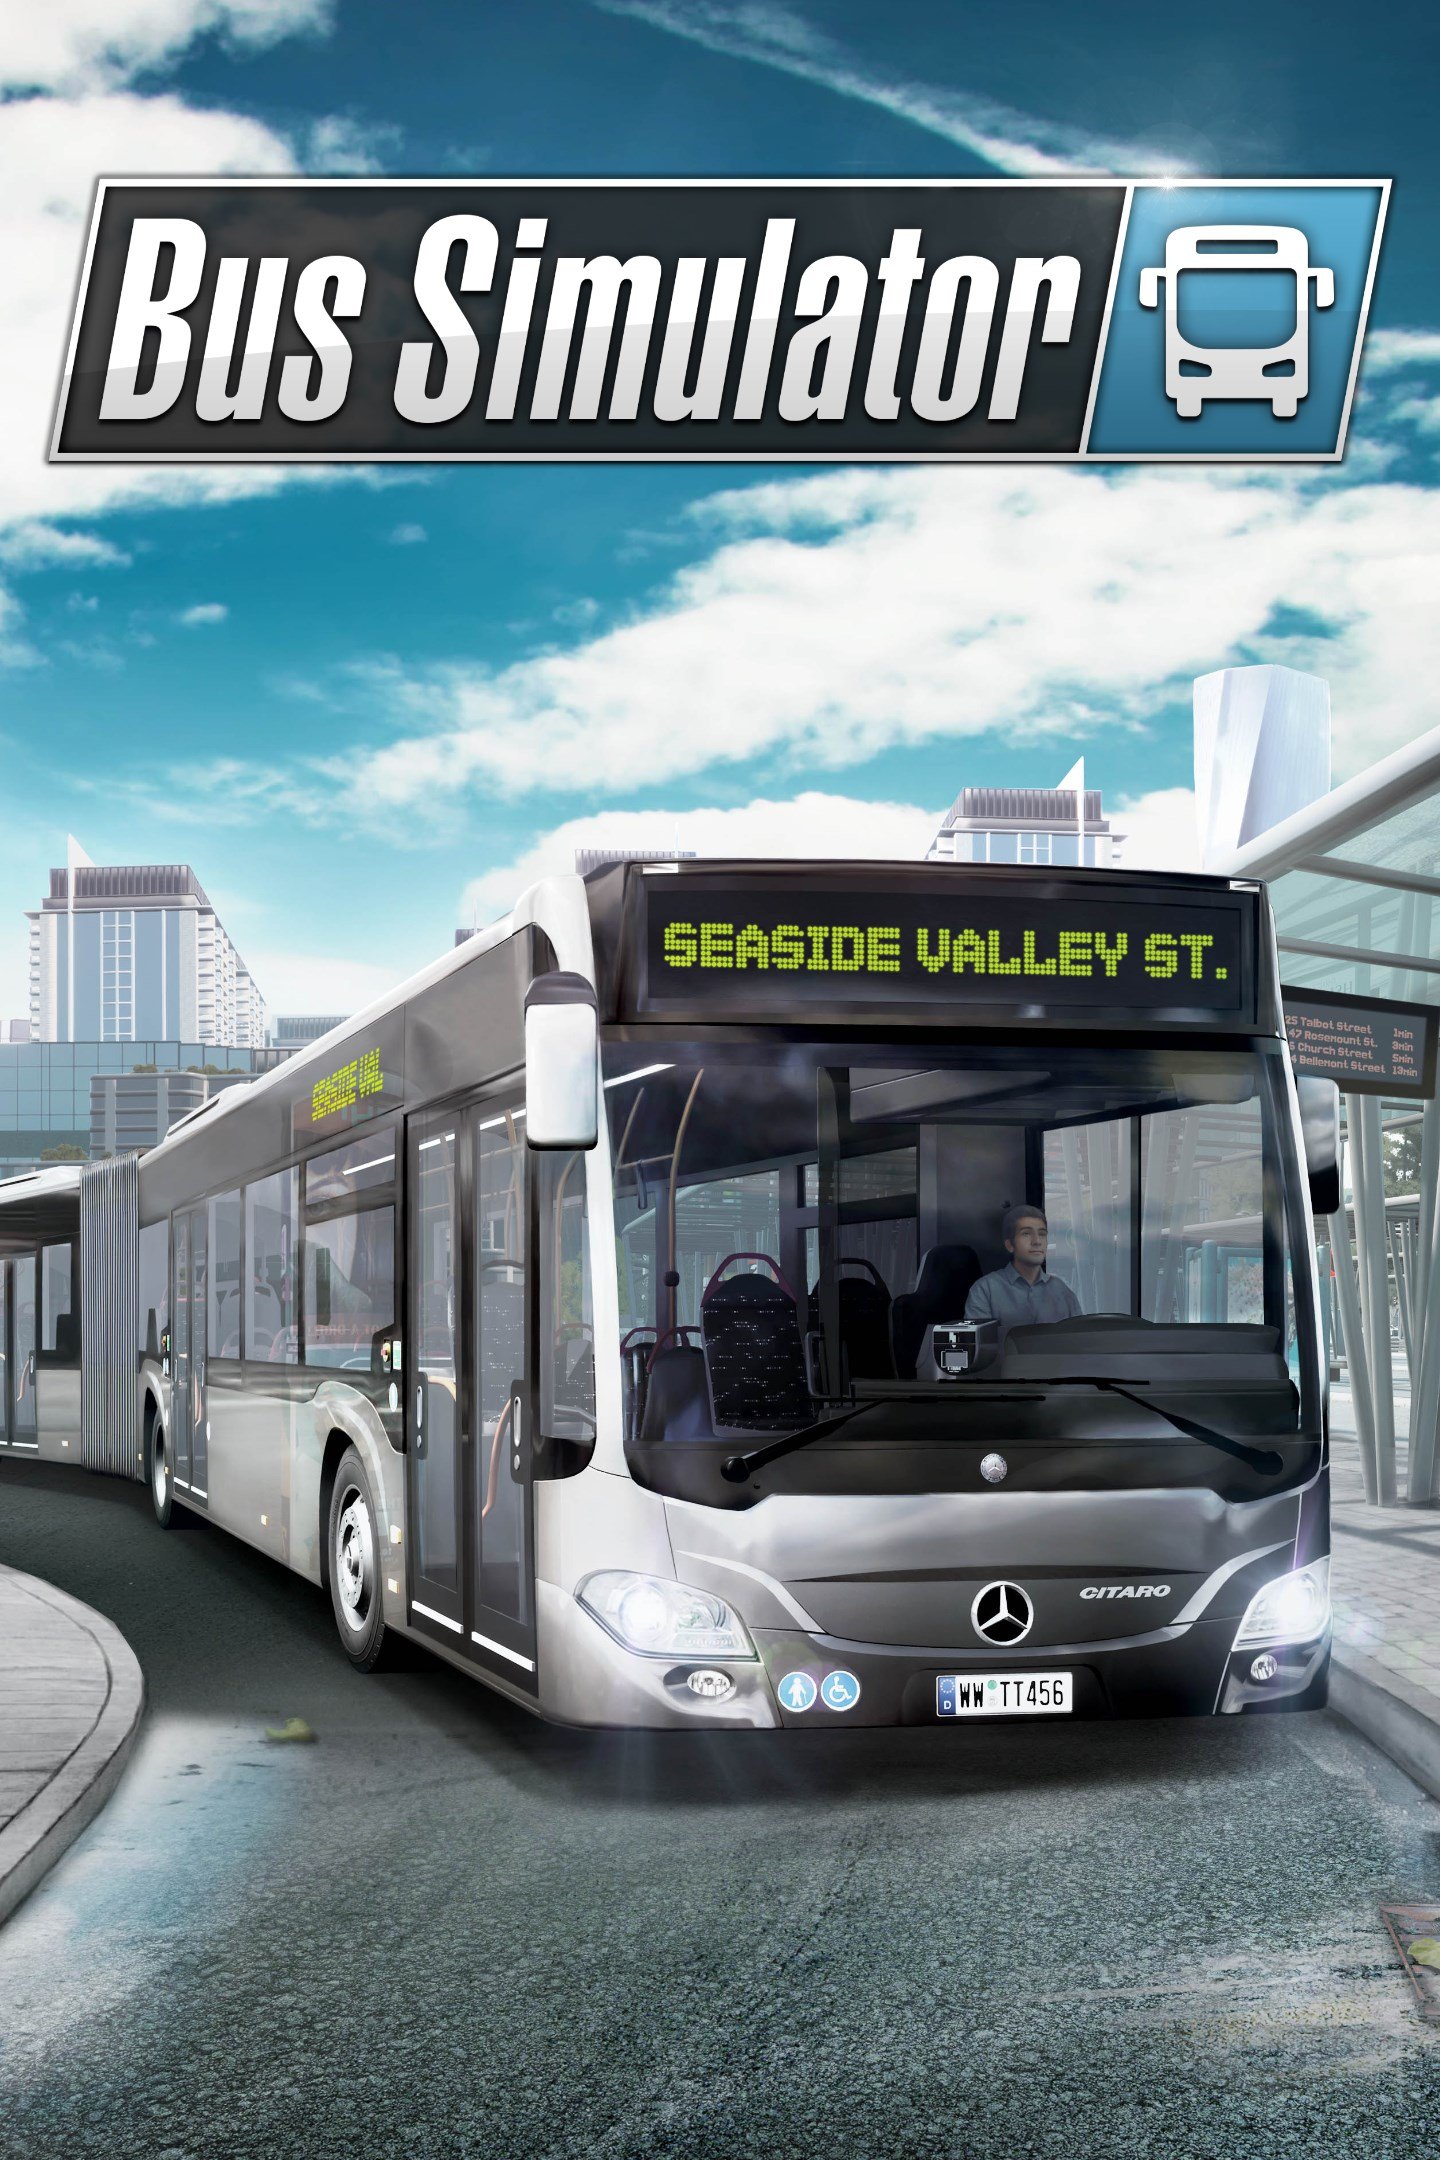 jaquette du jeu vidéo Bus Simulator 18